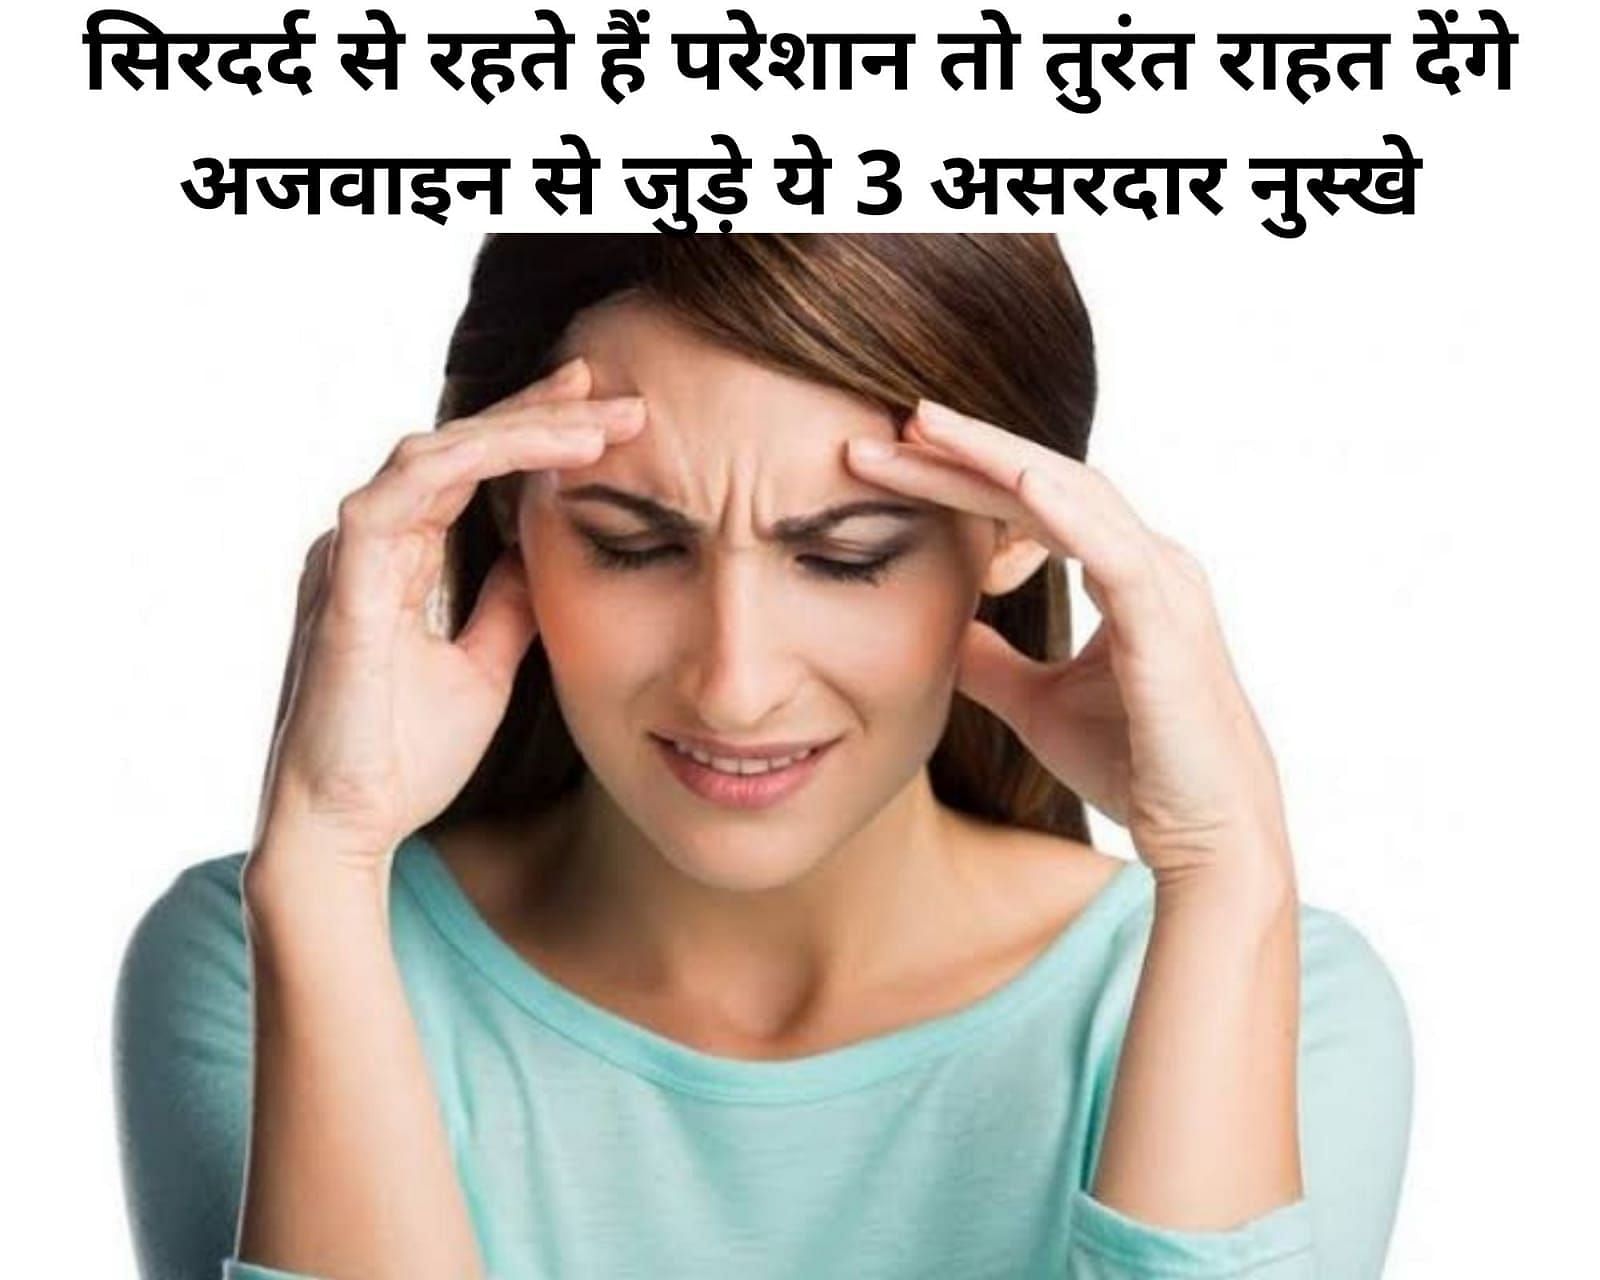 सिरदर्द से रहते हैं परेशान तो तुरंत राहत देंगे अजवाइन से जुड़े ये 3 असरदार नुस्खे (फोटो - sportskeeda hindi)